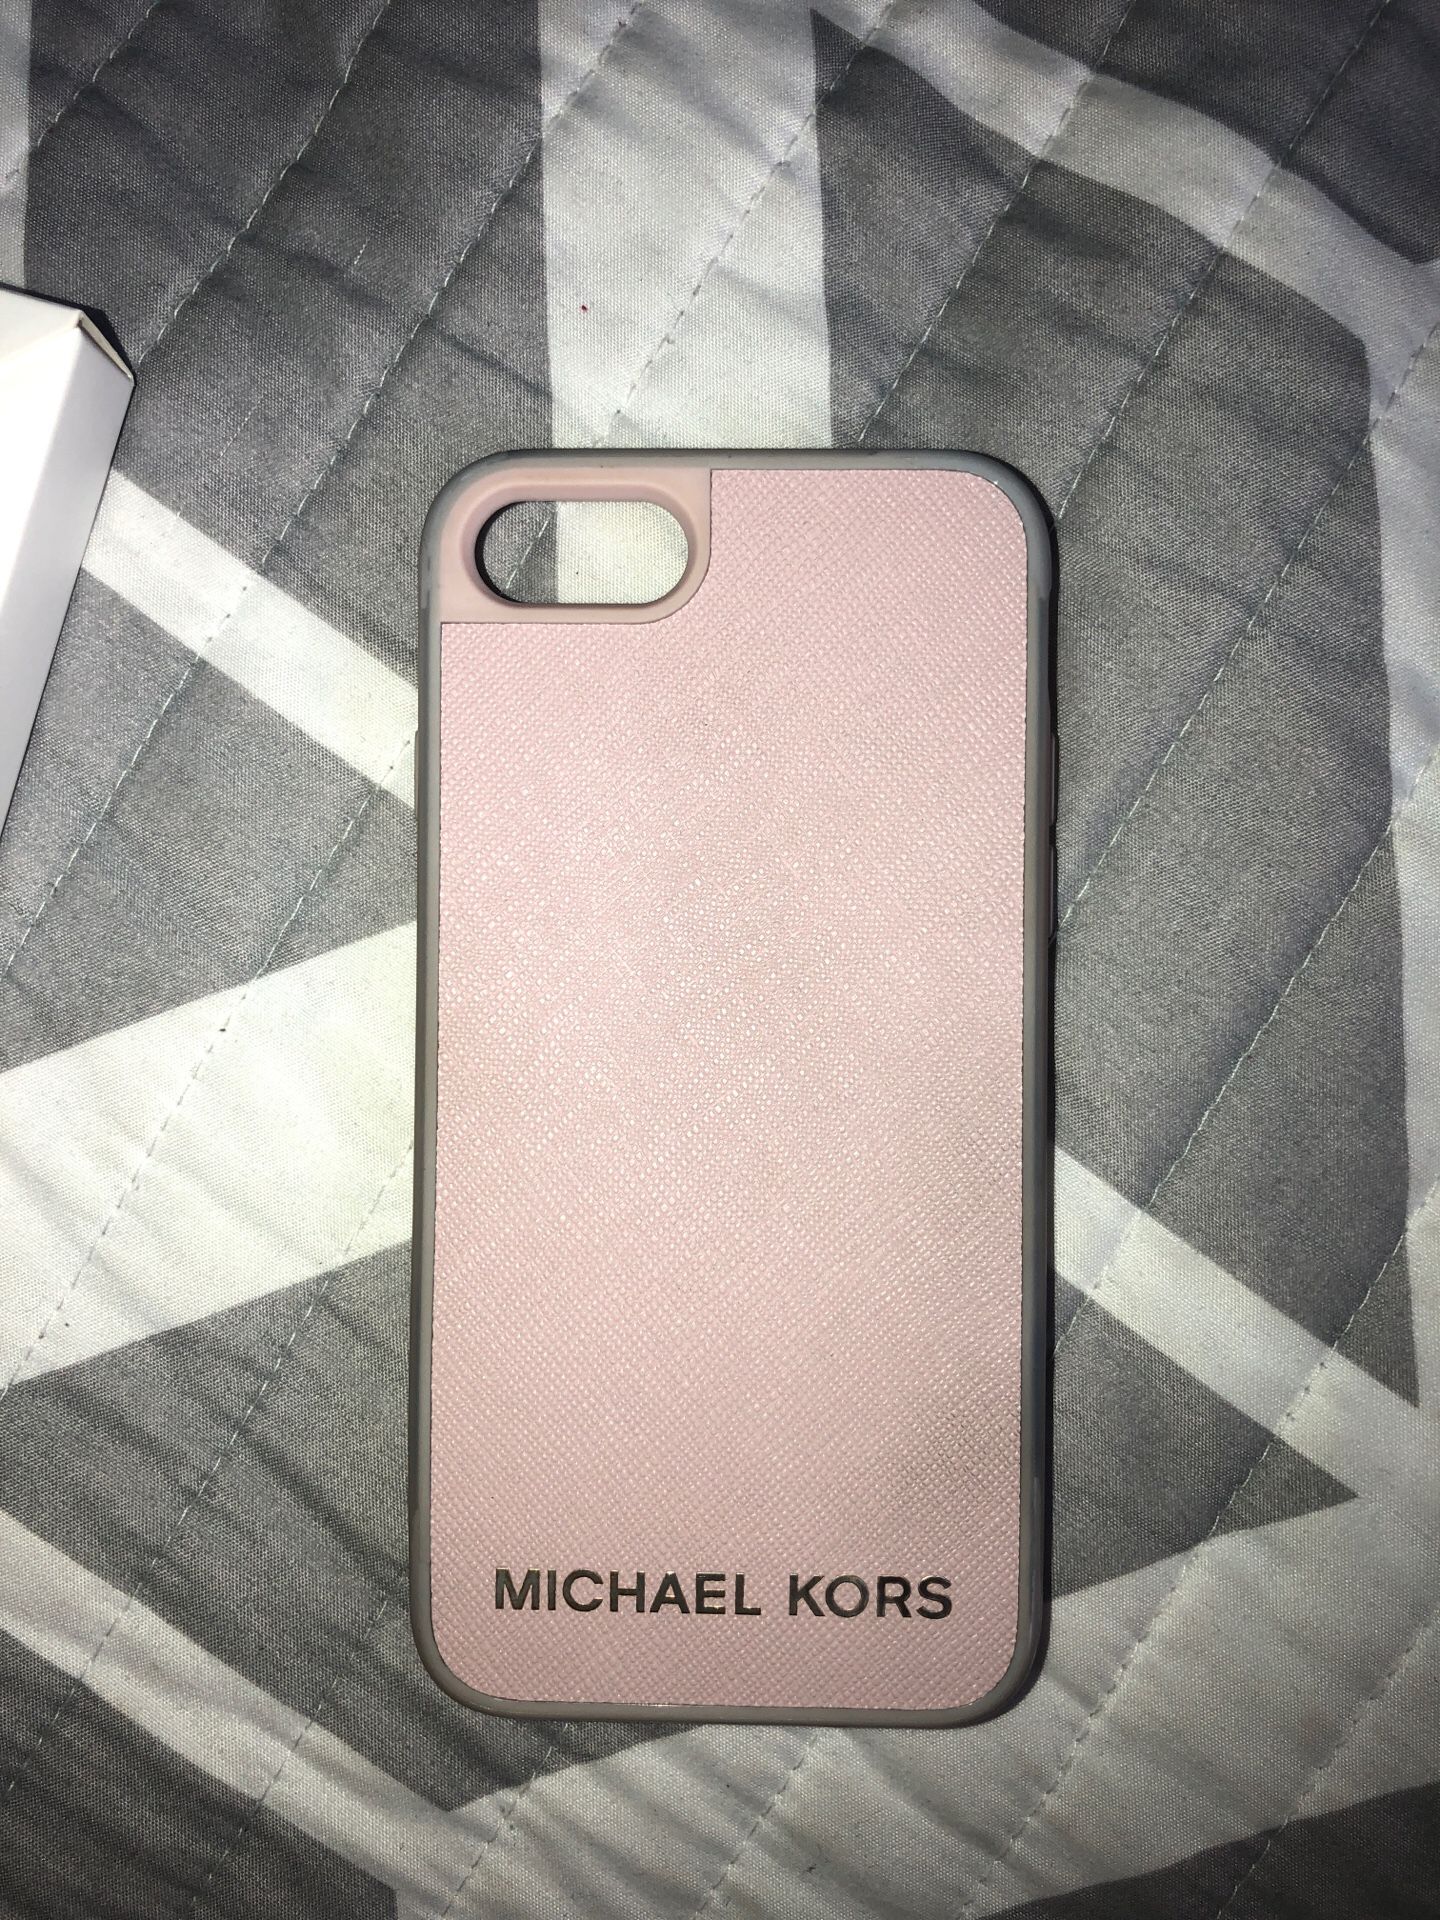 vervolgens drinken Verbinding Michael Kors iPhone 6,7,8 case for Sale in Corona, CA - OfferUp